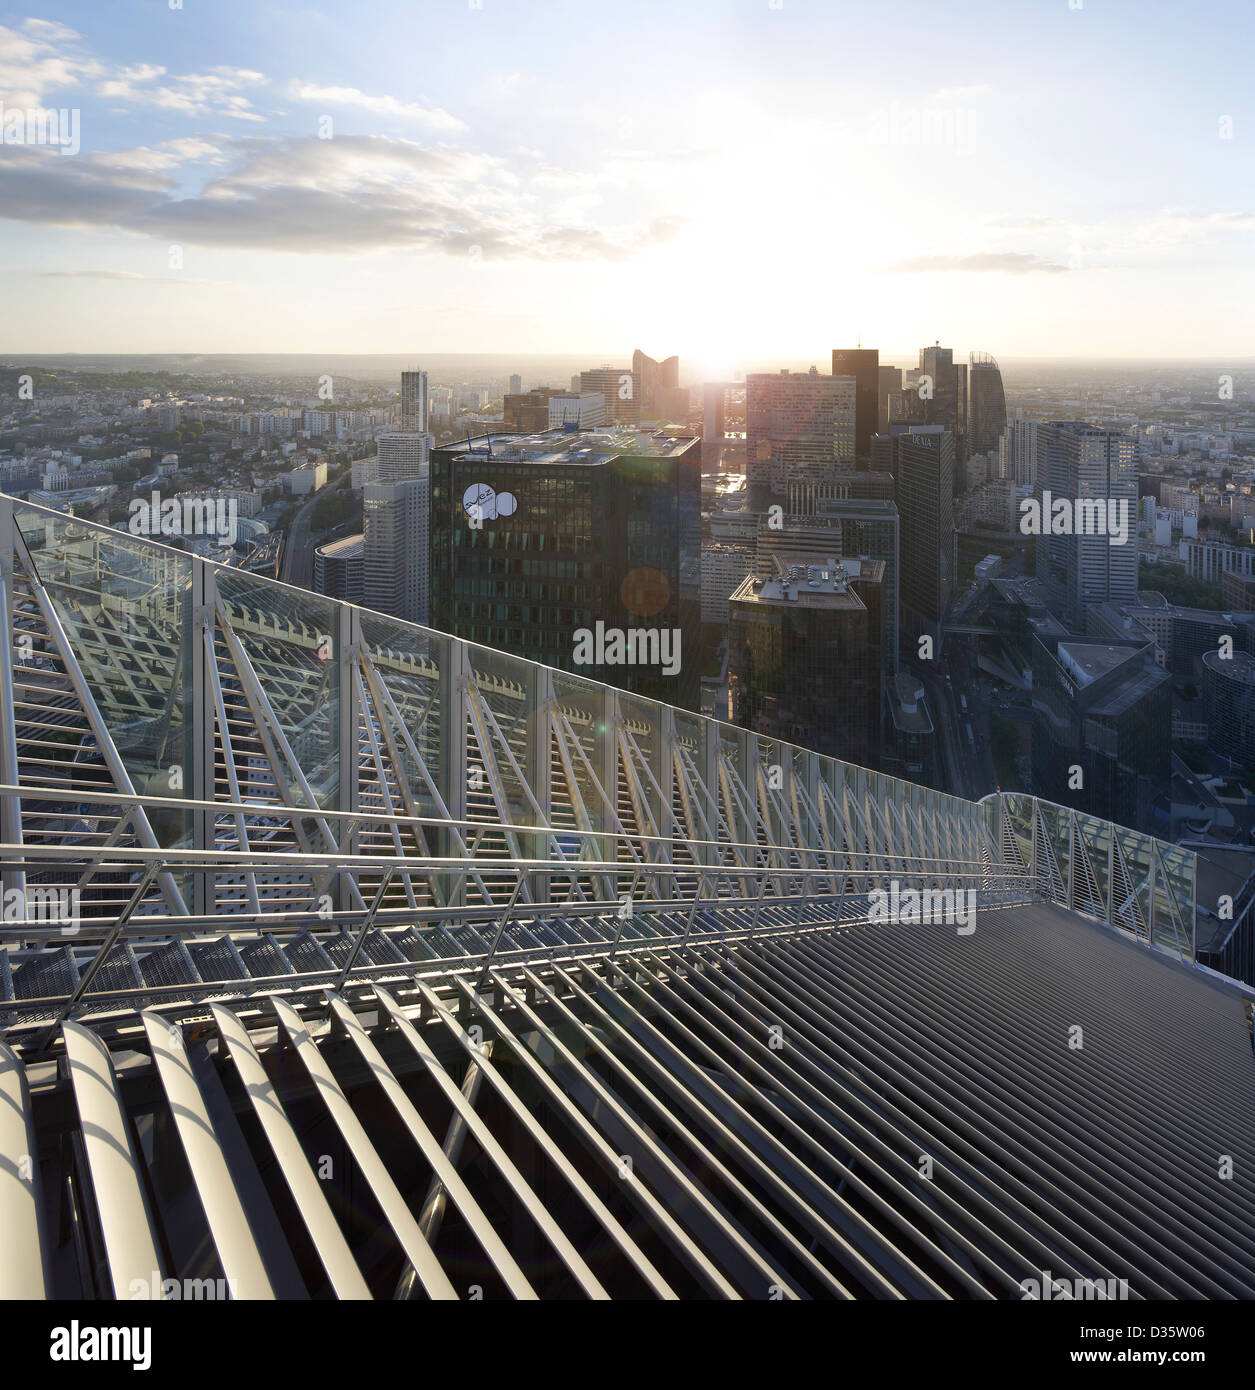 Primo Tour di Parigi, Parigi, Francia. Architetto: Kohn Pedersen Fox Associates (KPF), 2011. Vista dettagliata delle bocchette di ventilazione del tetto e mainten Foto Stock